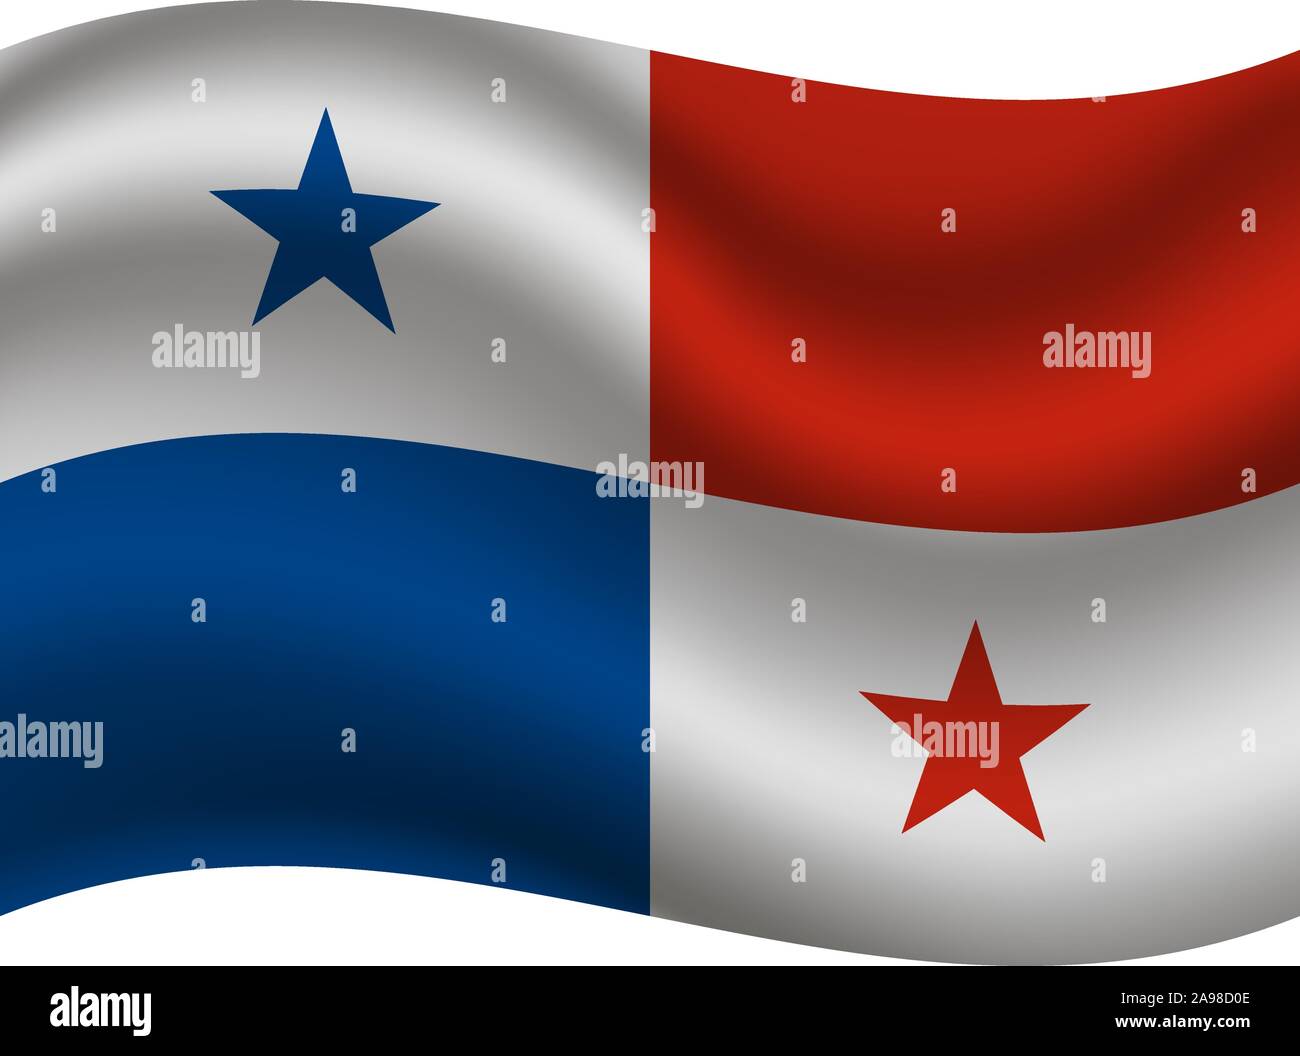 Beau drapeau national de la République de Panama. couleurs d'origine et de proportion. Vector illustration eps10 simplement, en provenance de pays. Illustration de Vecteur